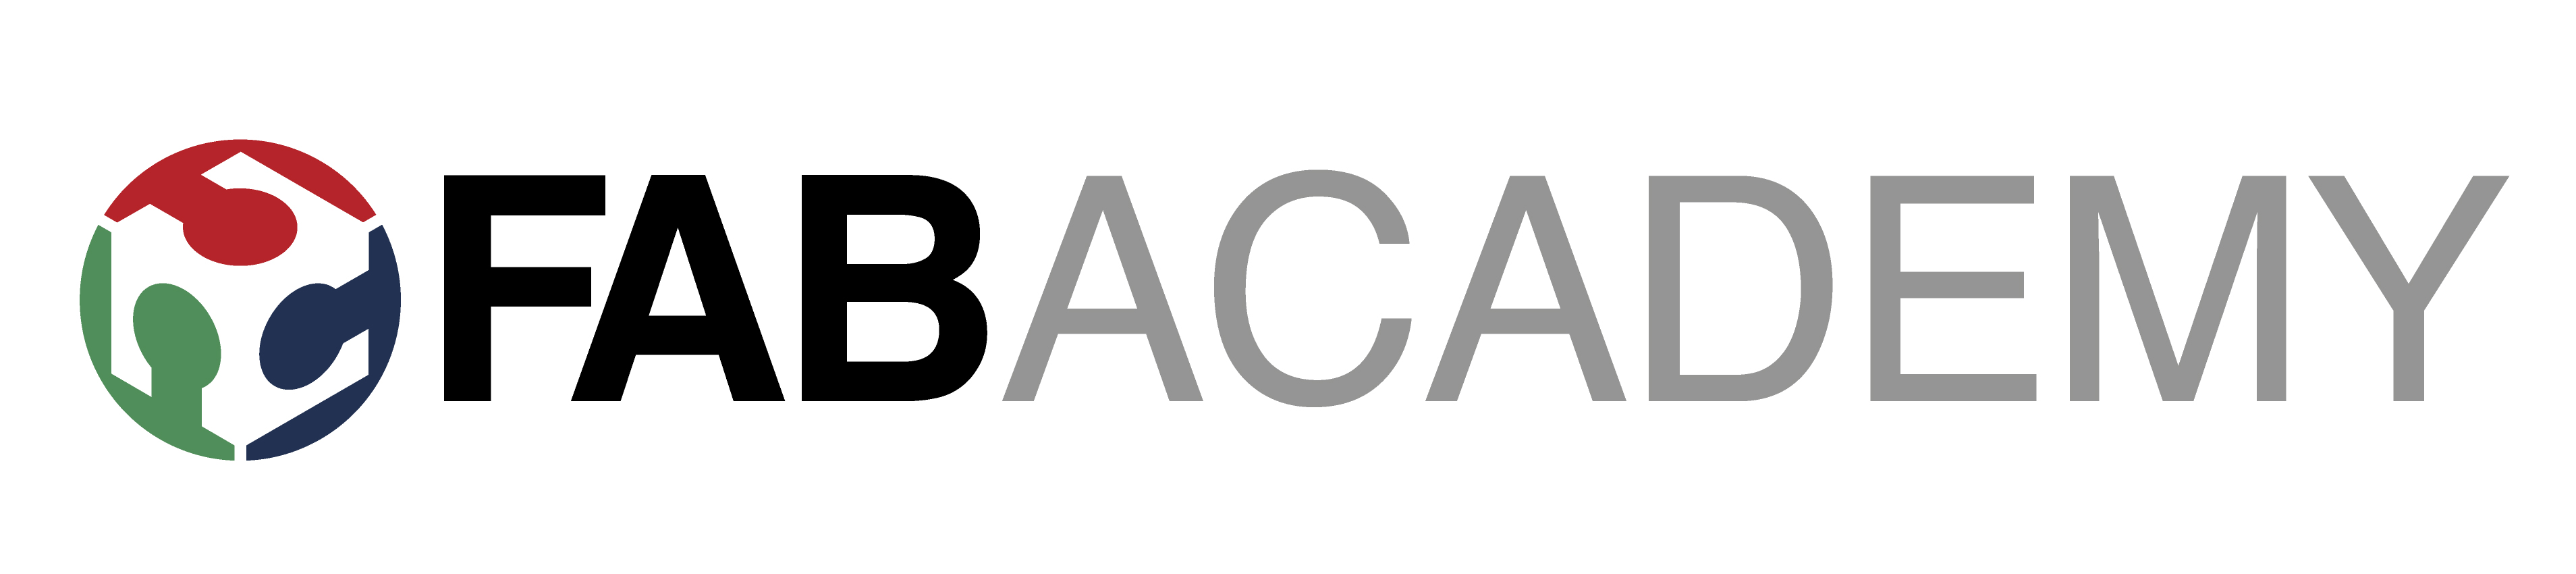 fabacademy logo